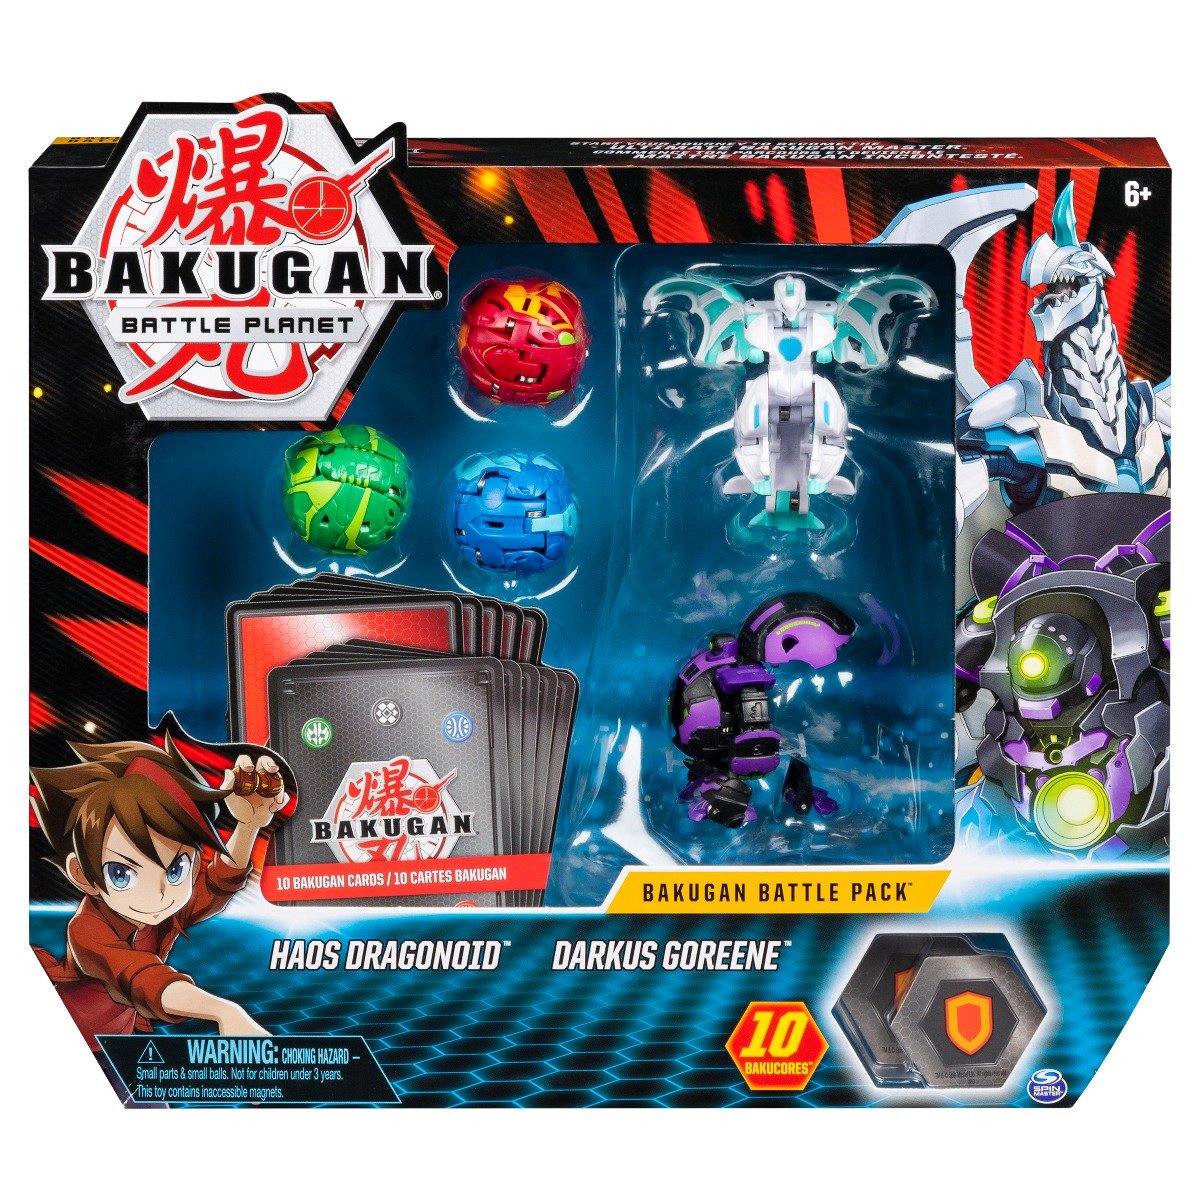 Set 5 Bakugan Battle Planet, Haos Dragonoid, Darkus Goreene, 20115627